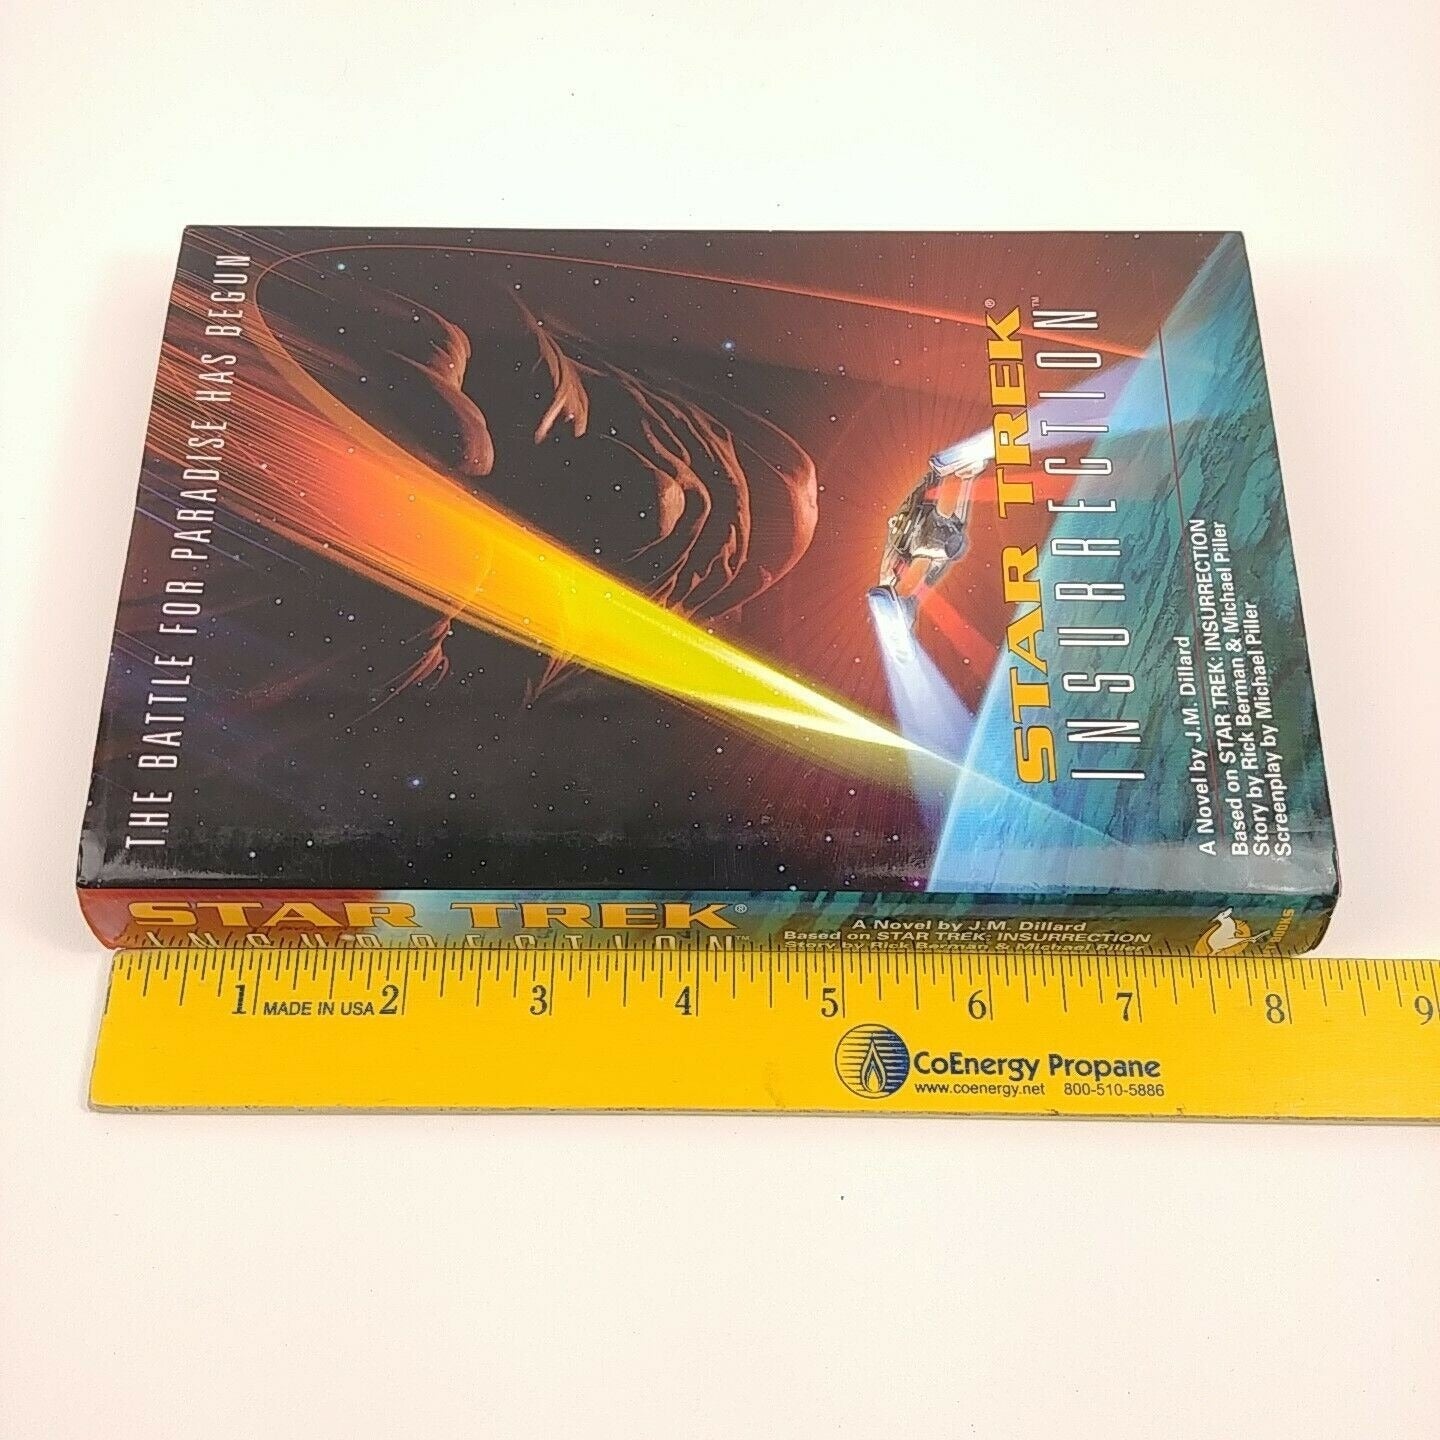 4 Star Trek Books Hardcover w/ DJs Probe Sarek Insurrection Prime Directive